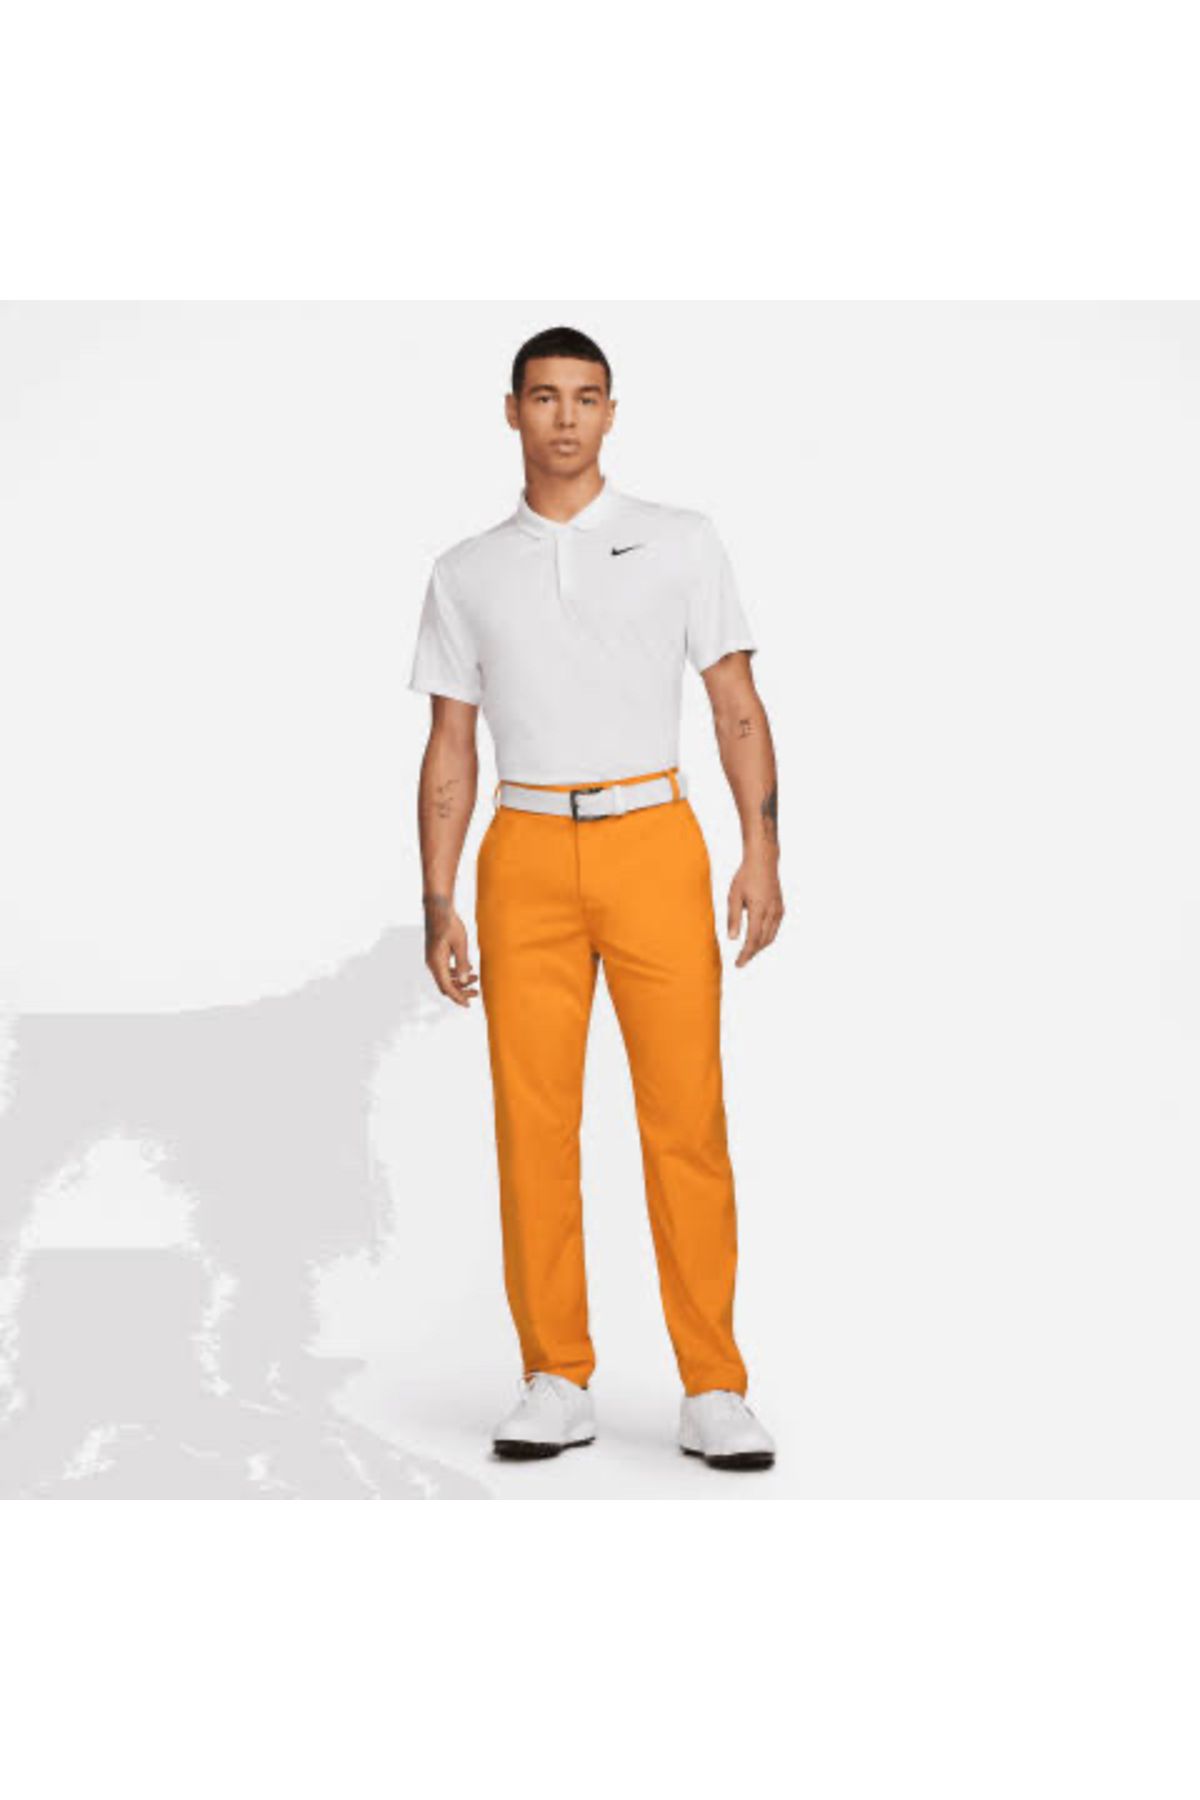 Nike Dri-Fit Victory Golf Trousers Monarch/White | Scottsdale Golf Spor Pantolon